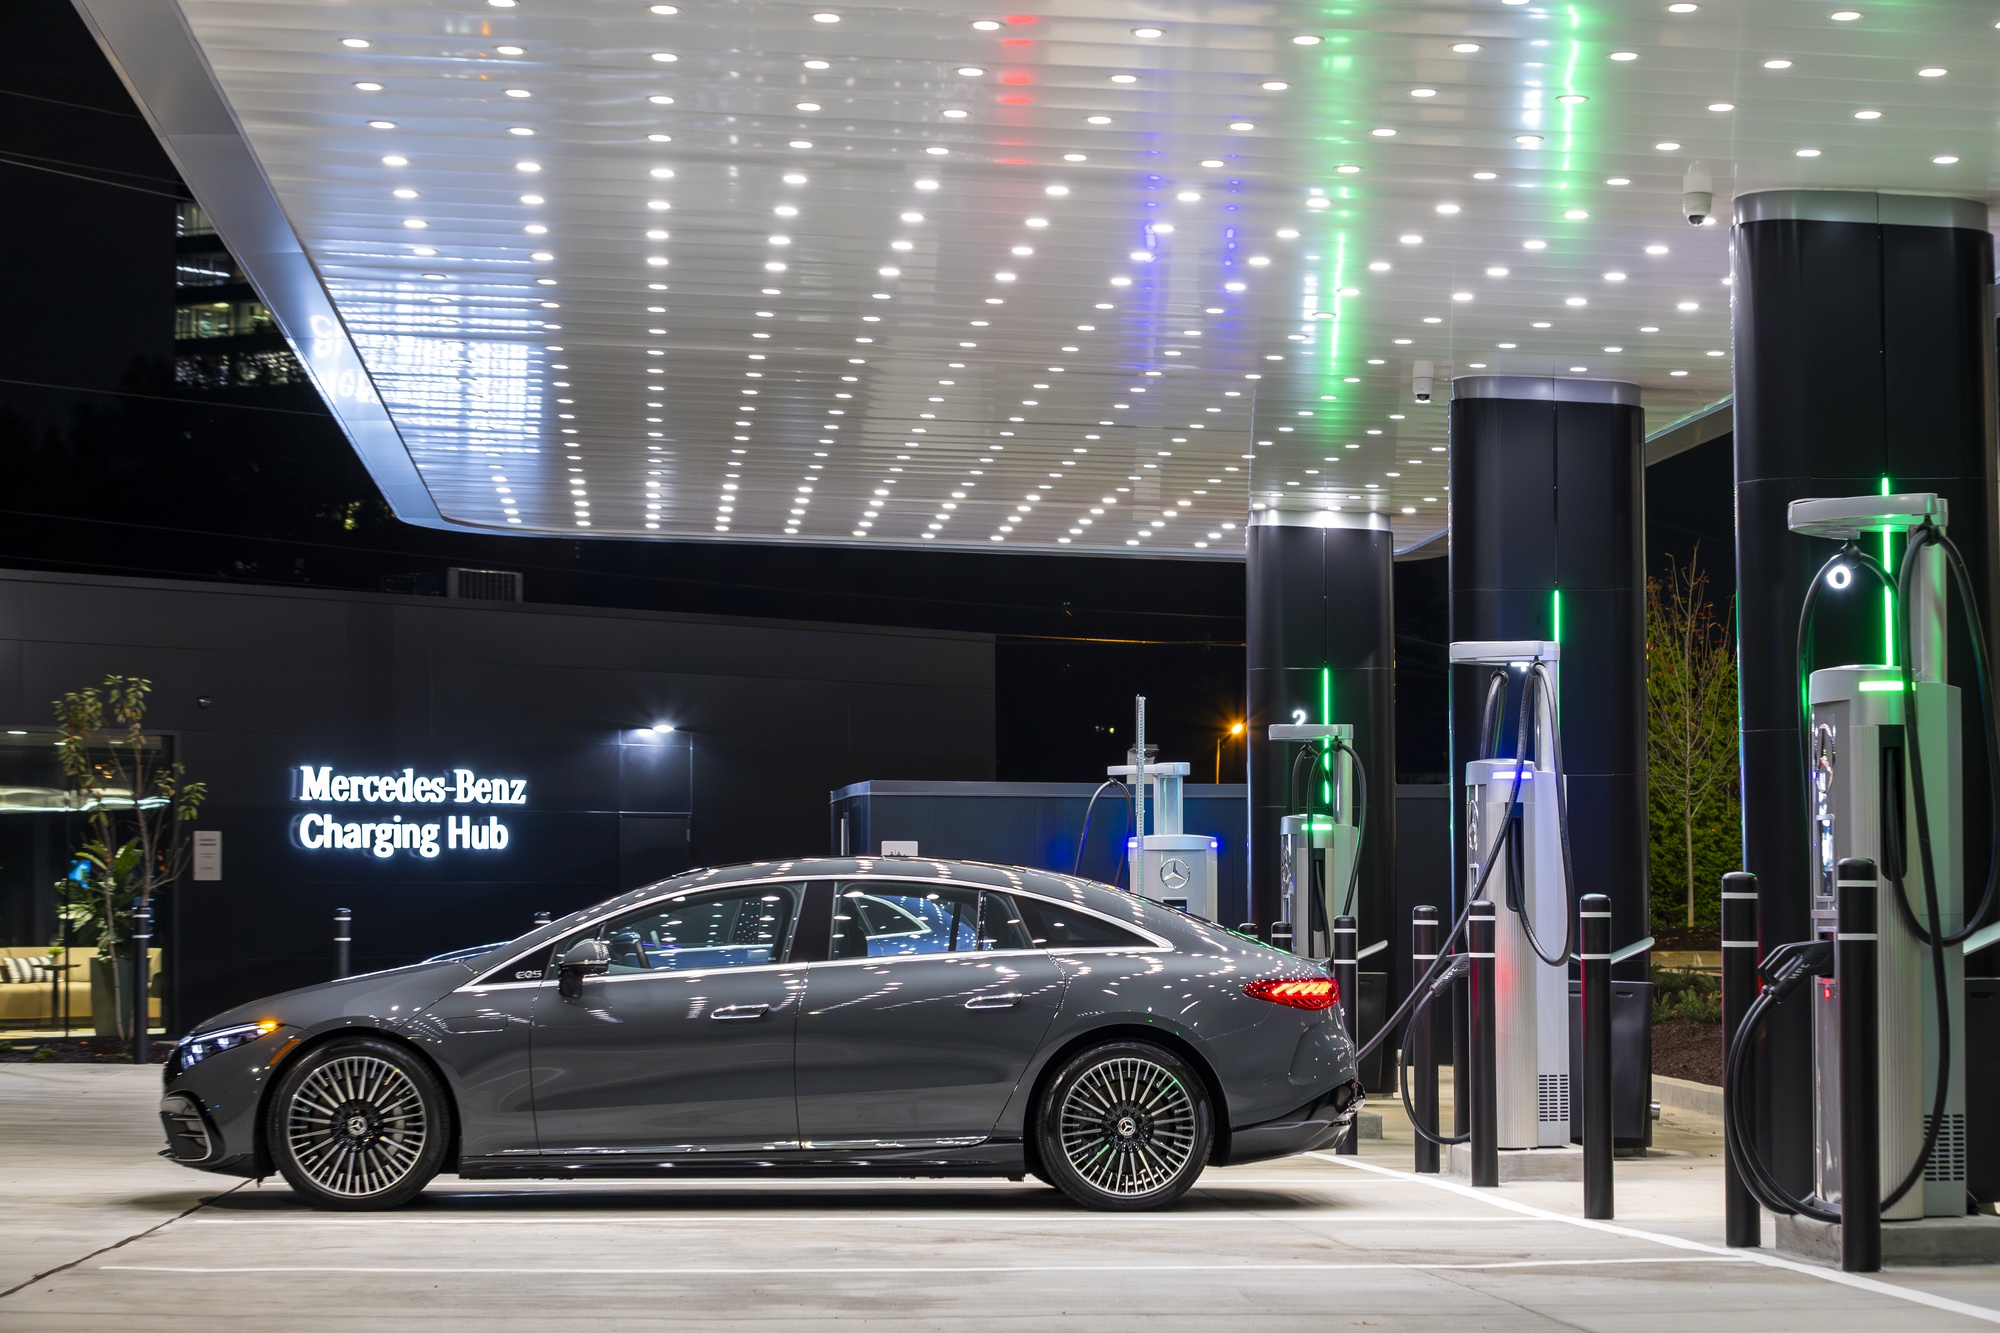 Mercedes-Benz mở trạm sạc siêu sang cho người dùng - Ảnh 1.